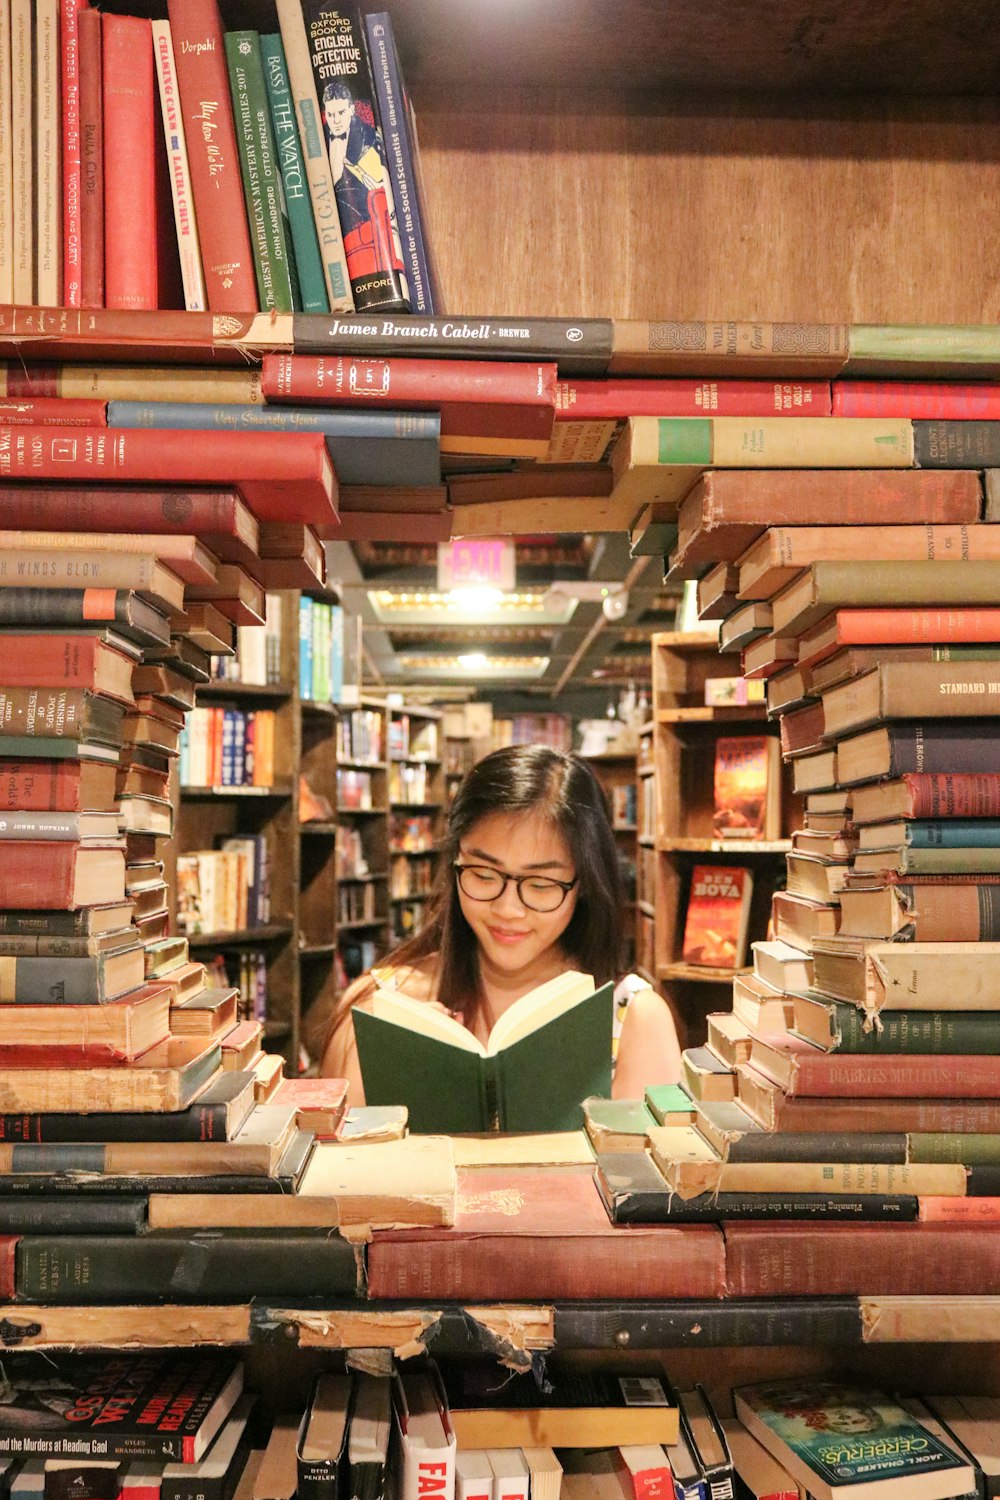 mujer con camisa verde sentada en libros